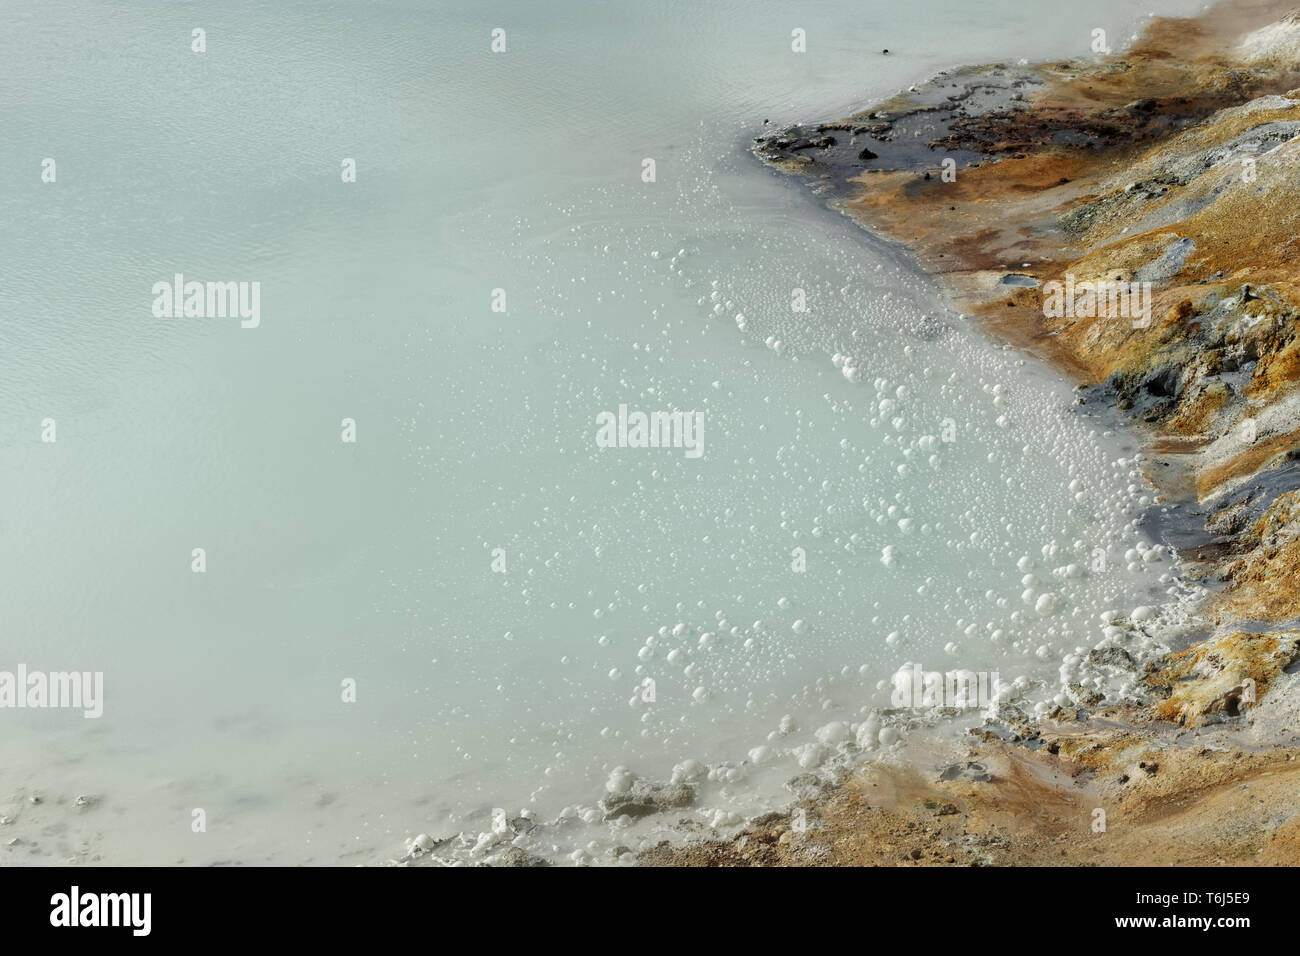 Wasser Oberfläche in einem geothermischen Gebiet, auf der Wasseroberfläche Blasen zu sehen sind, aufsteigend nach dem Gas gebildet, mineralische Ablagerungen am Ufer - Ort: Island Stockfoto